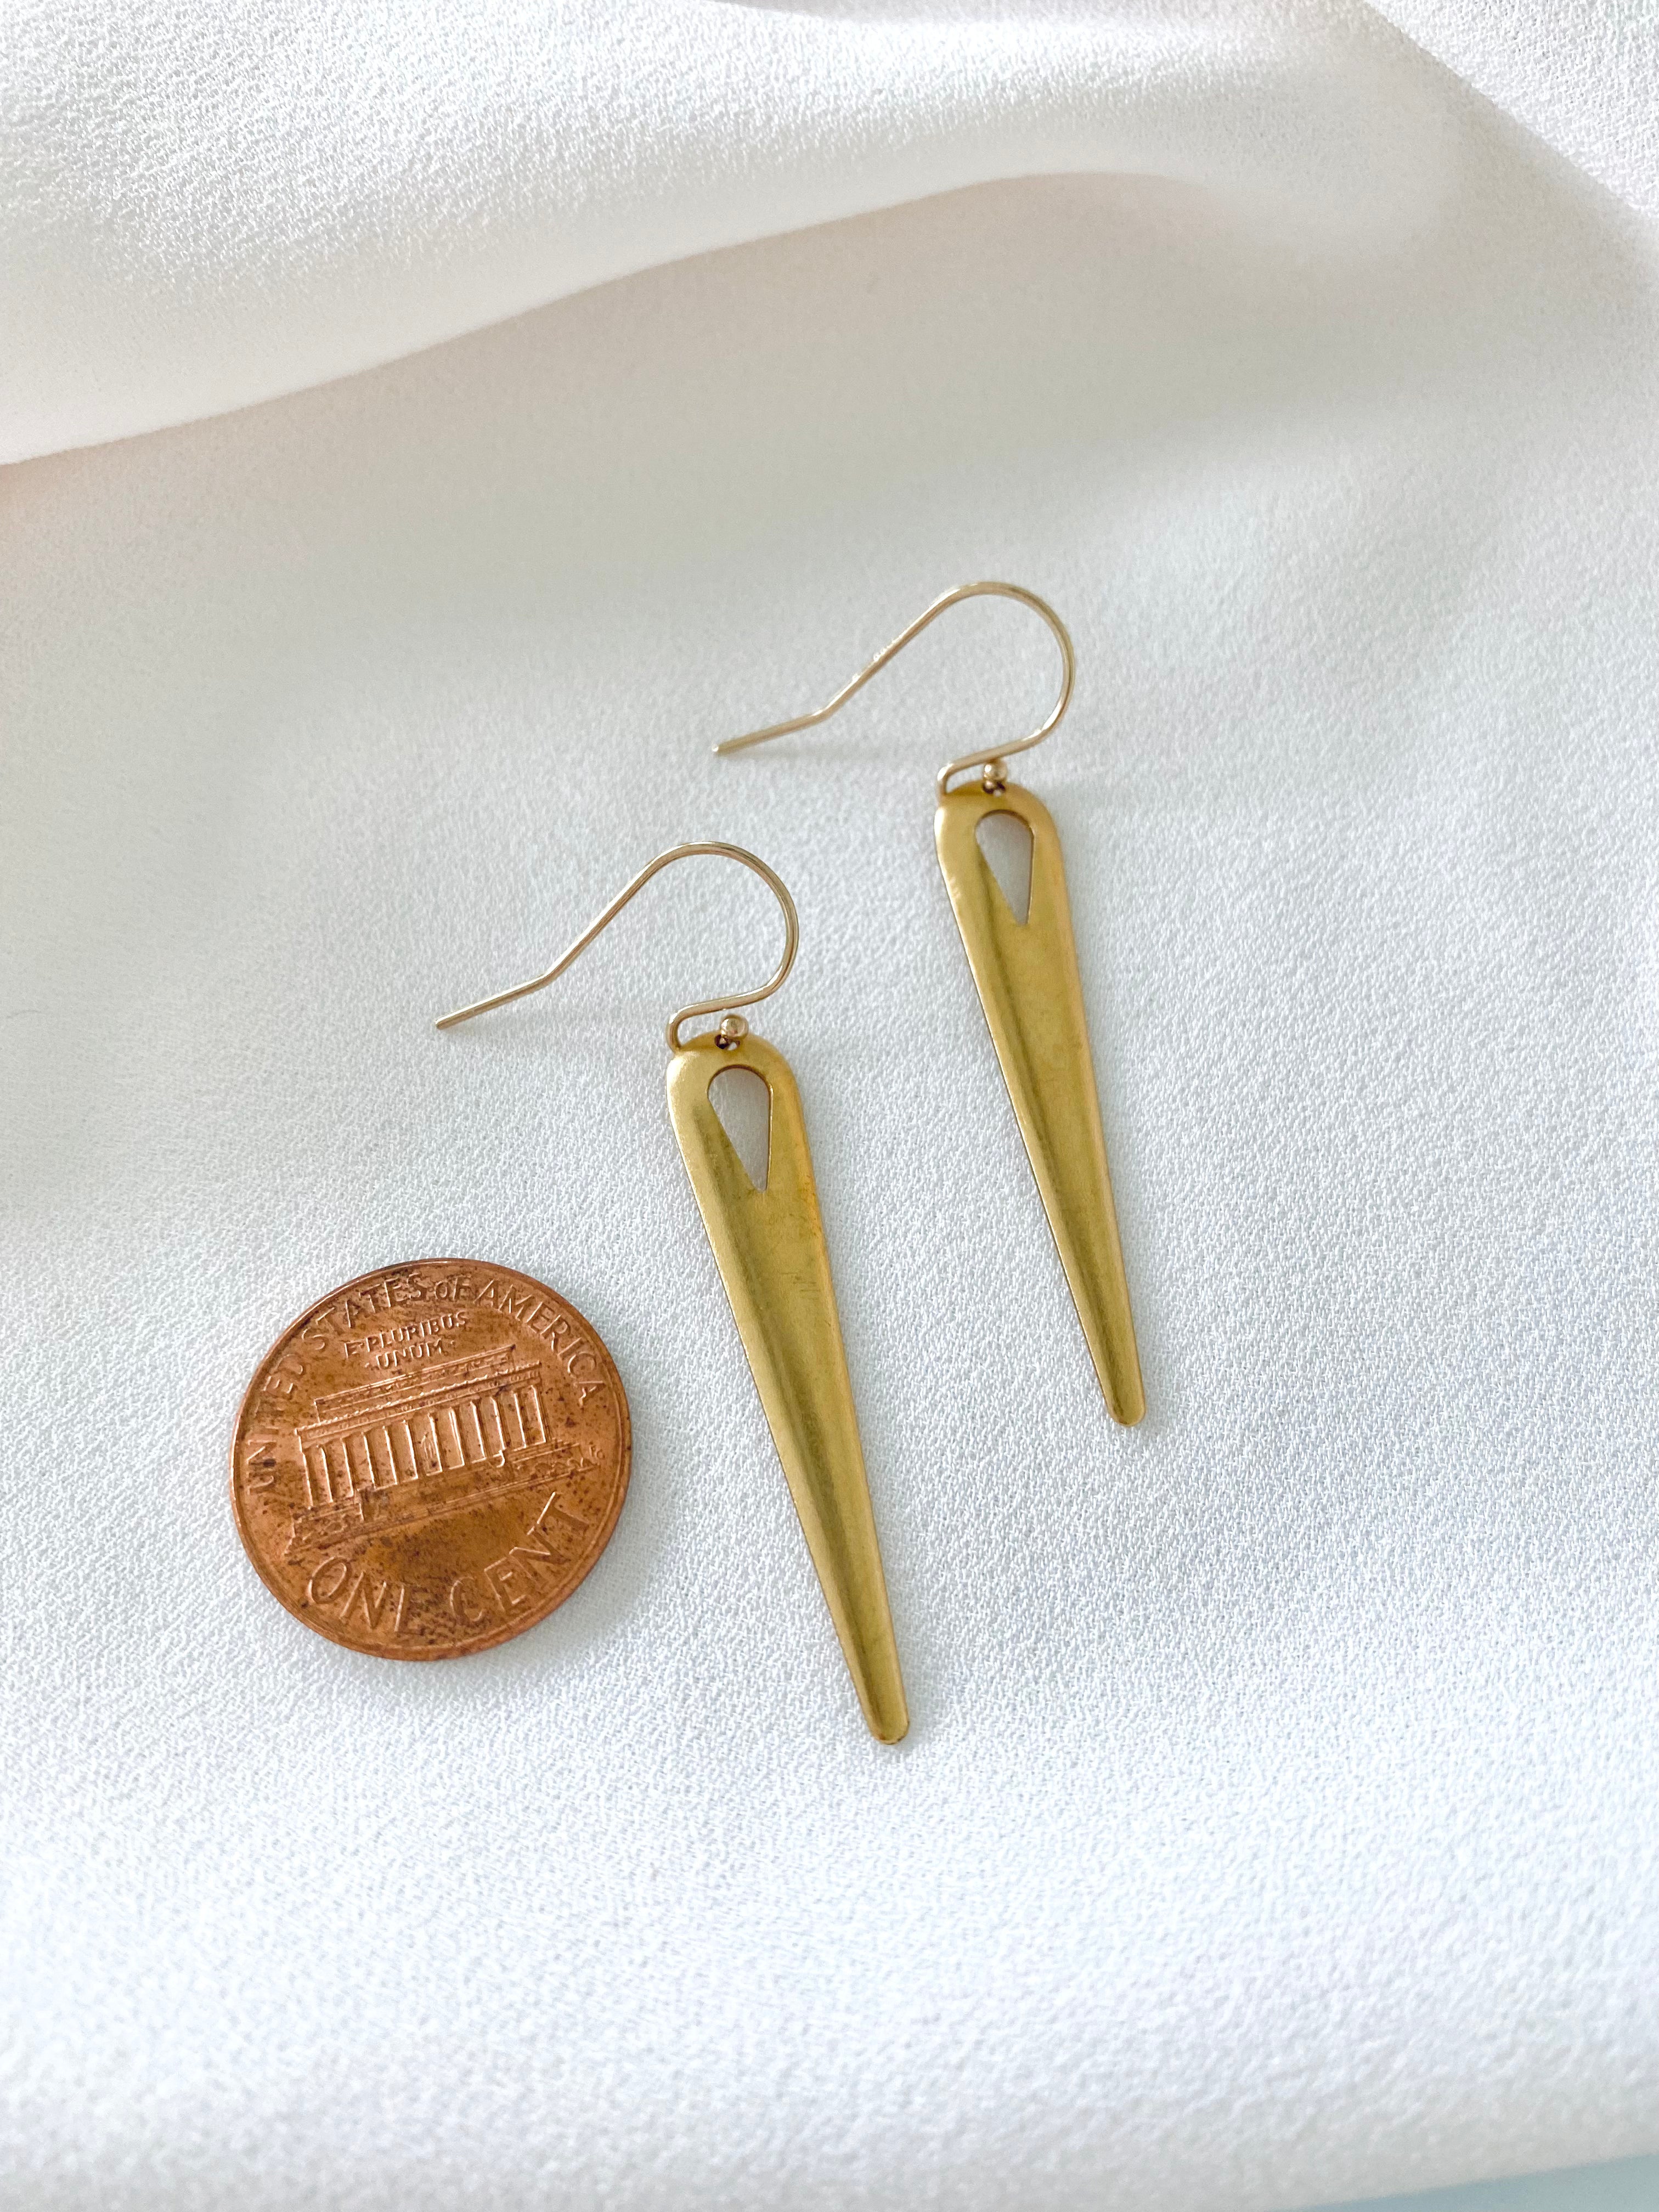 Gold Dangle Drop Earrings - Gold Filled Hooks - Festival Jewelry